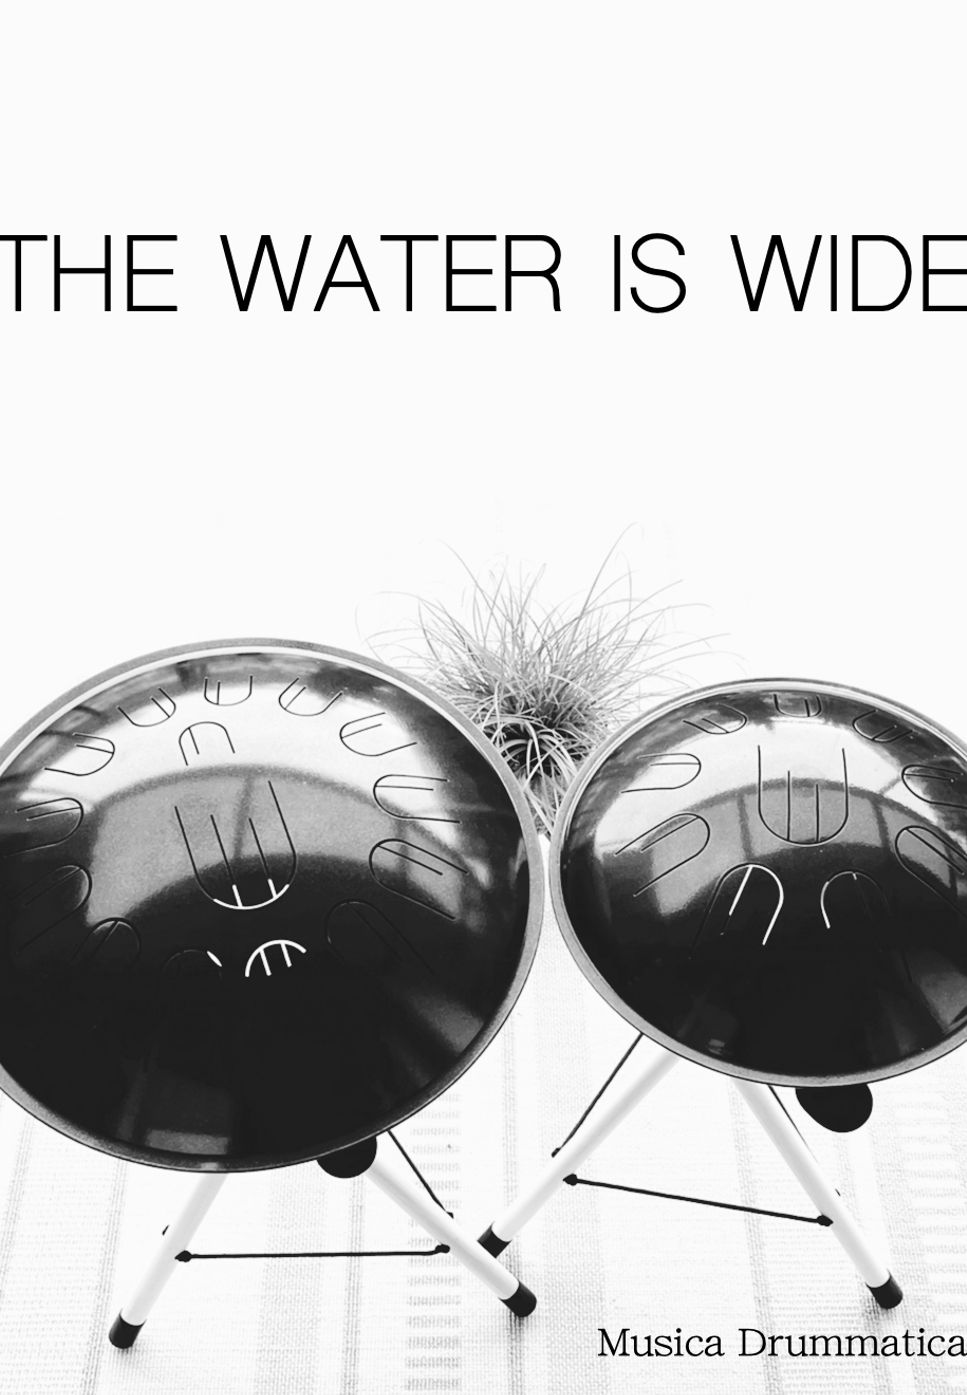 スコットランド民謡 - The Water Is Wide (with number notation) by Musica Drummatica